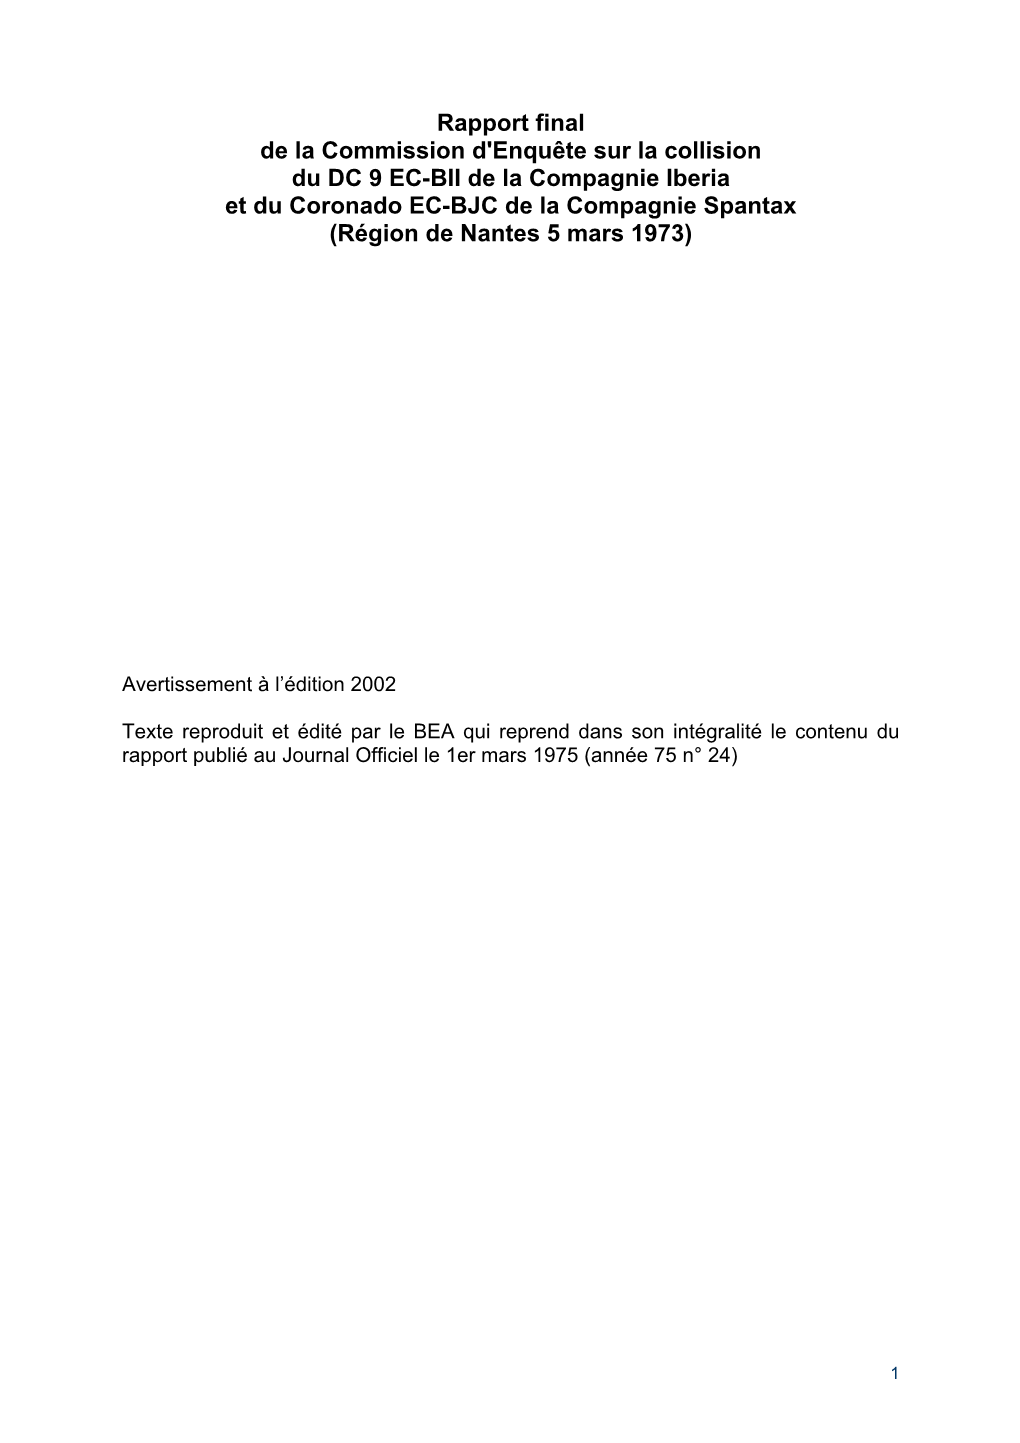 Rapport Final De La Commission D'enquête Sur La Collision Du DC 9